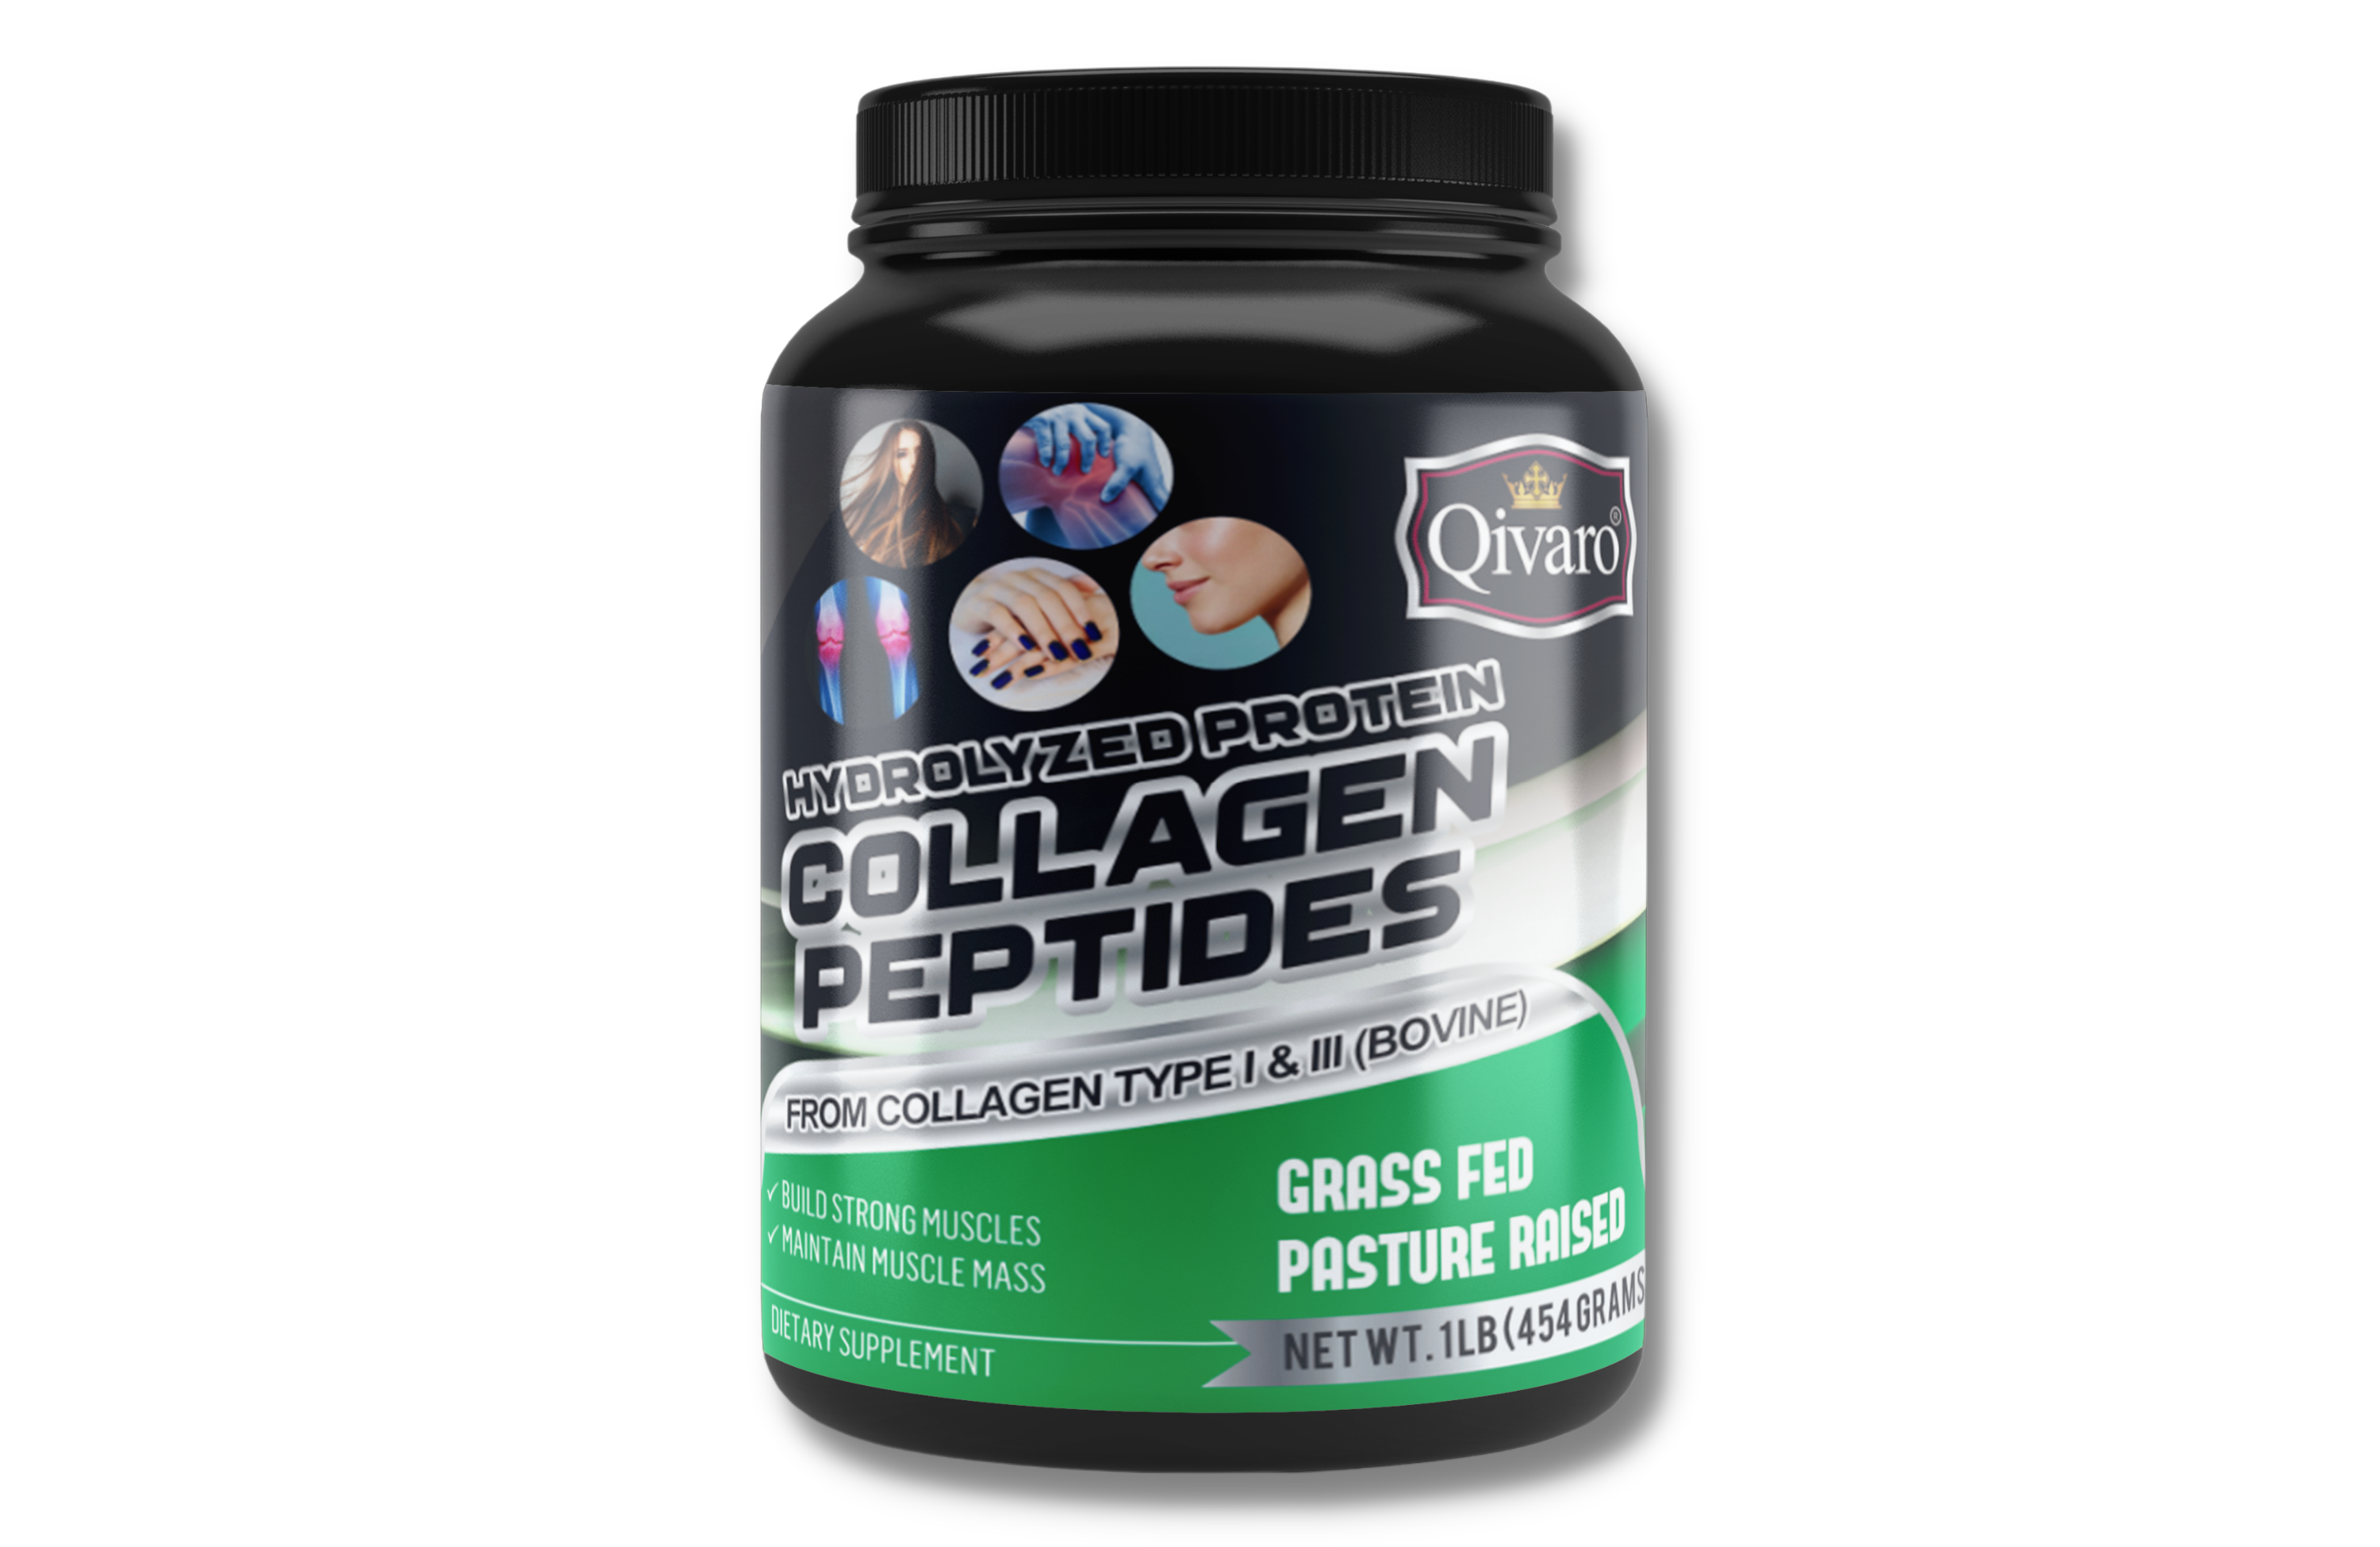 QWN04A - Hydrolyzed Collagen Peptides Protein Powder